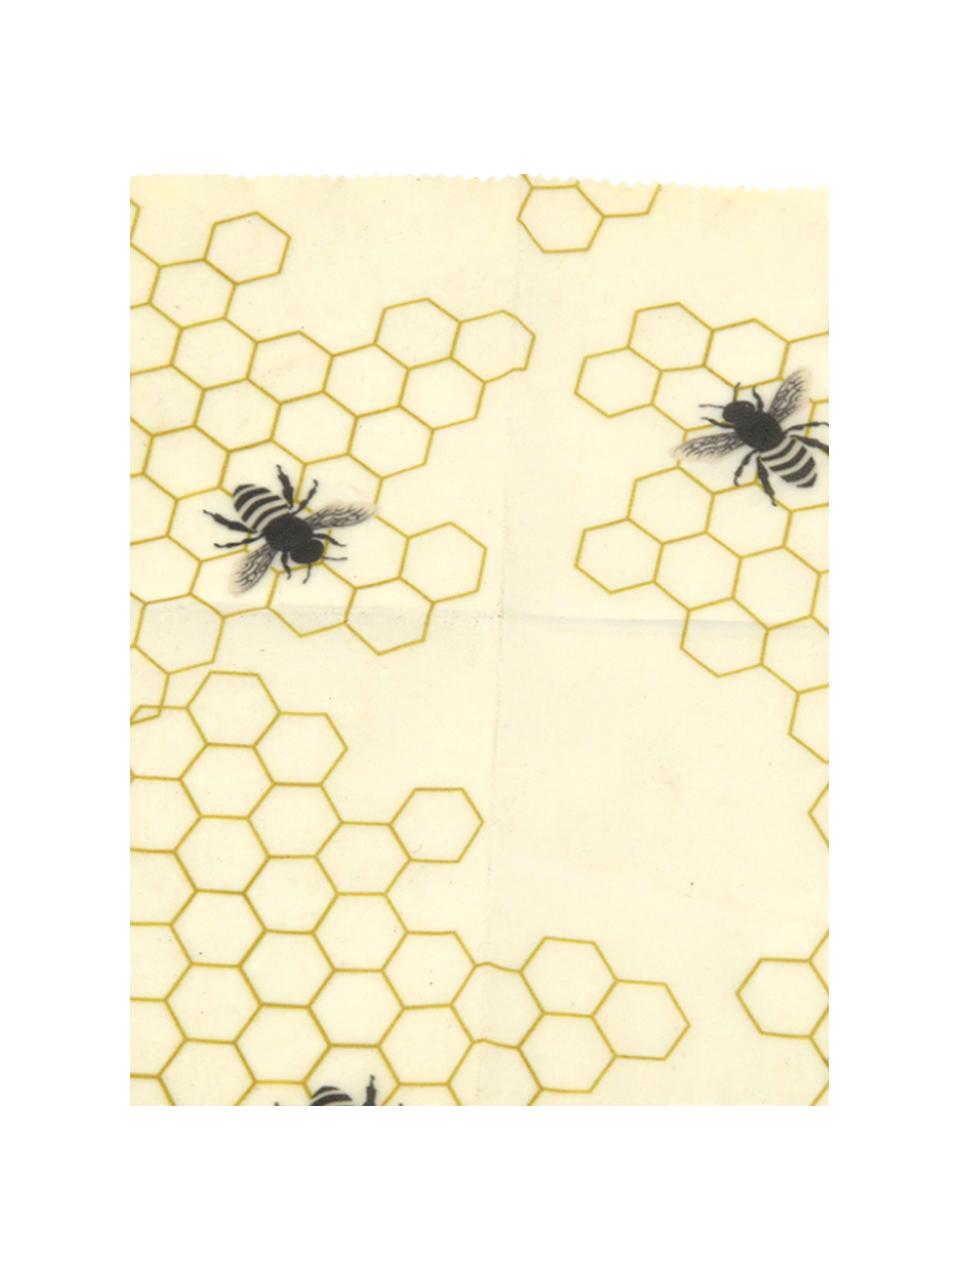 Sada voskovaných ubrousků Bee, 3 díly, Bavlna, vosk, Žlutá, černá, Sada s různými velikostmi